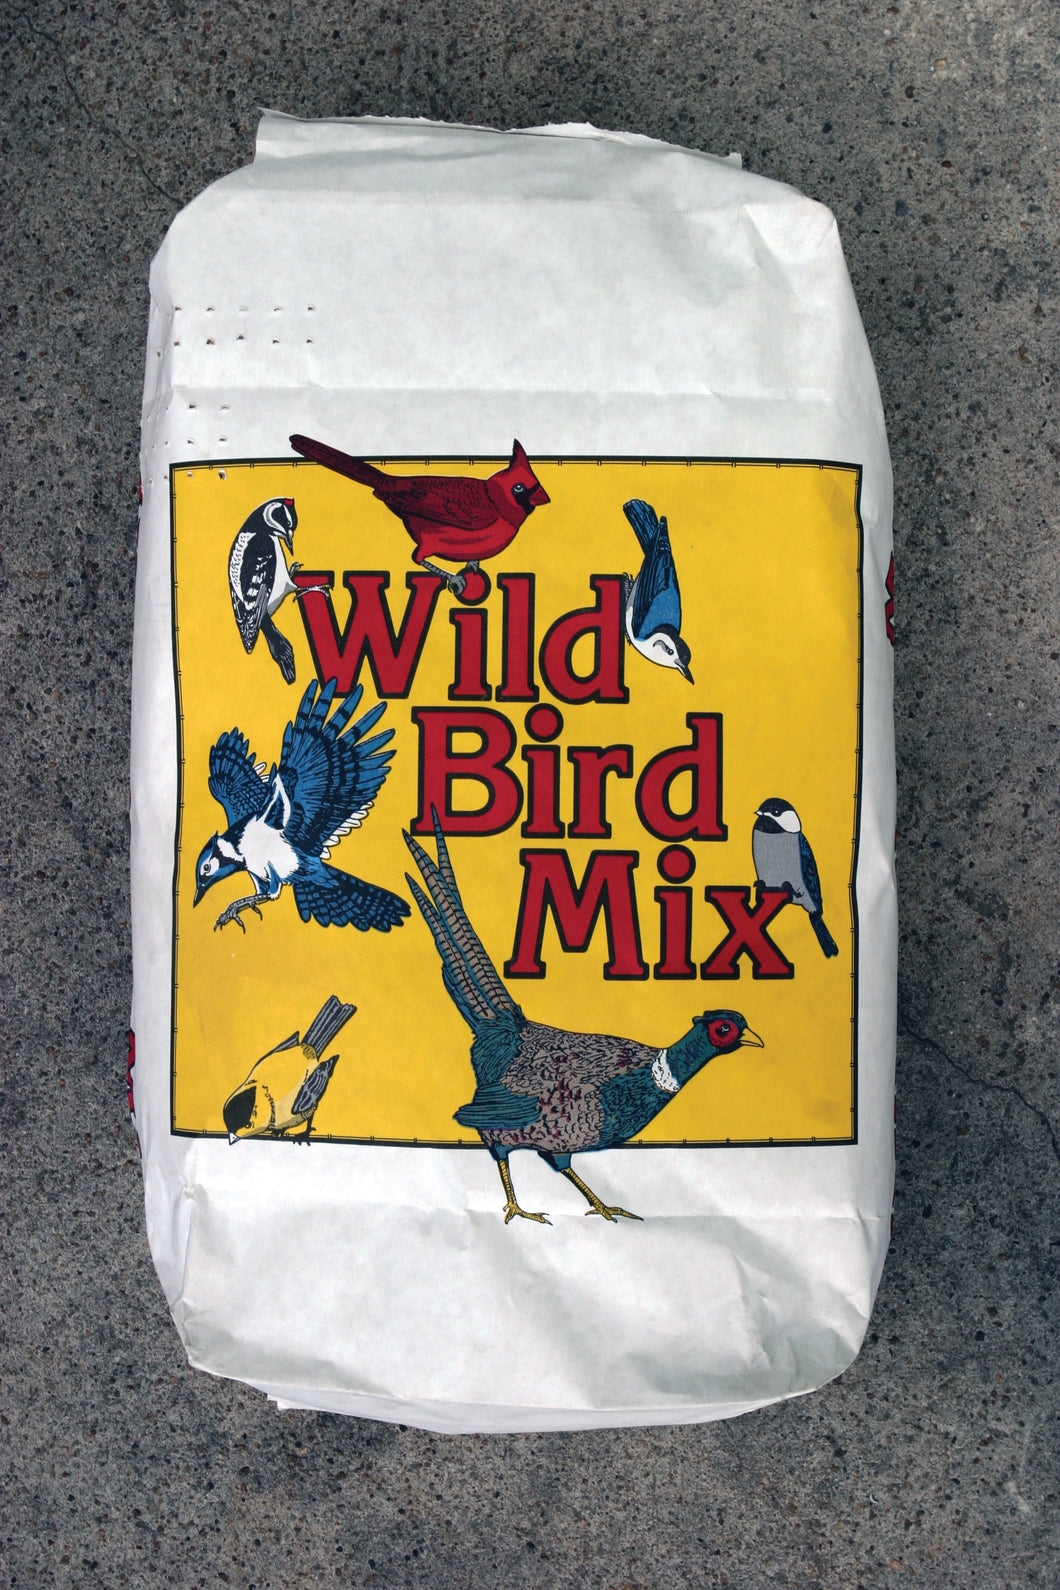 BIRD FEED MIX